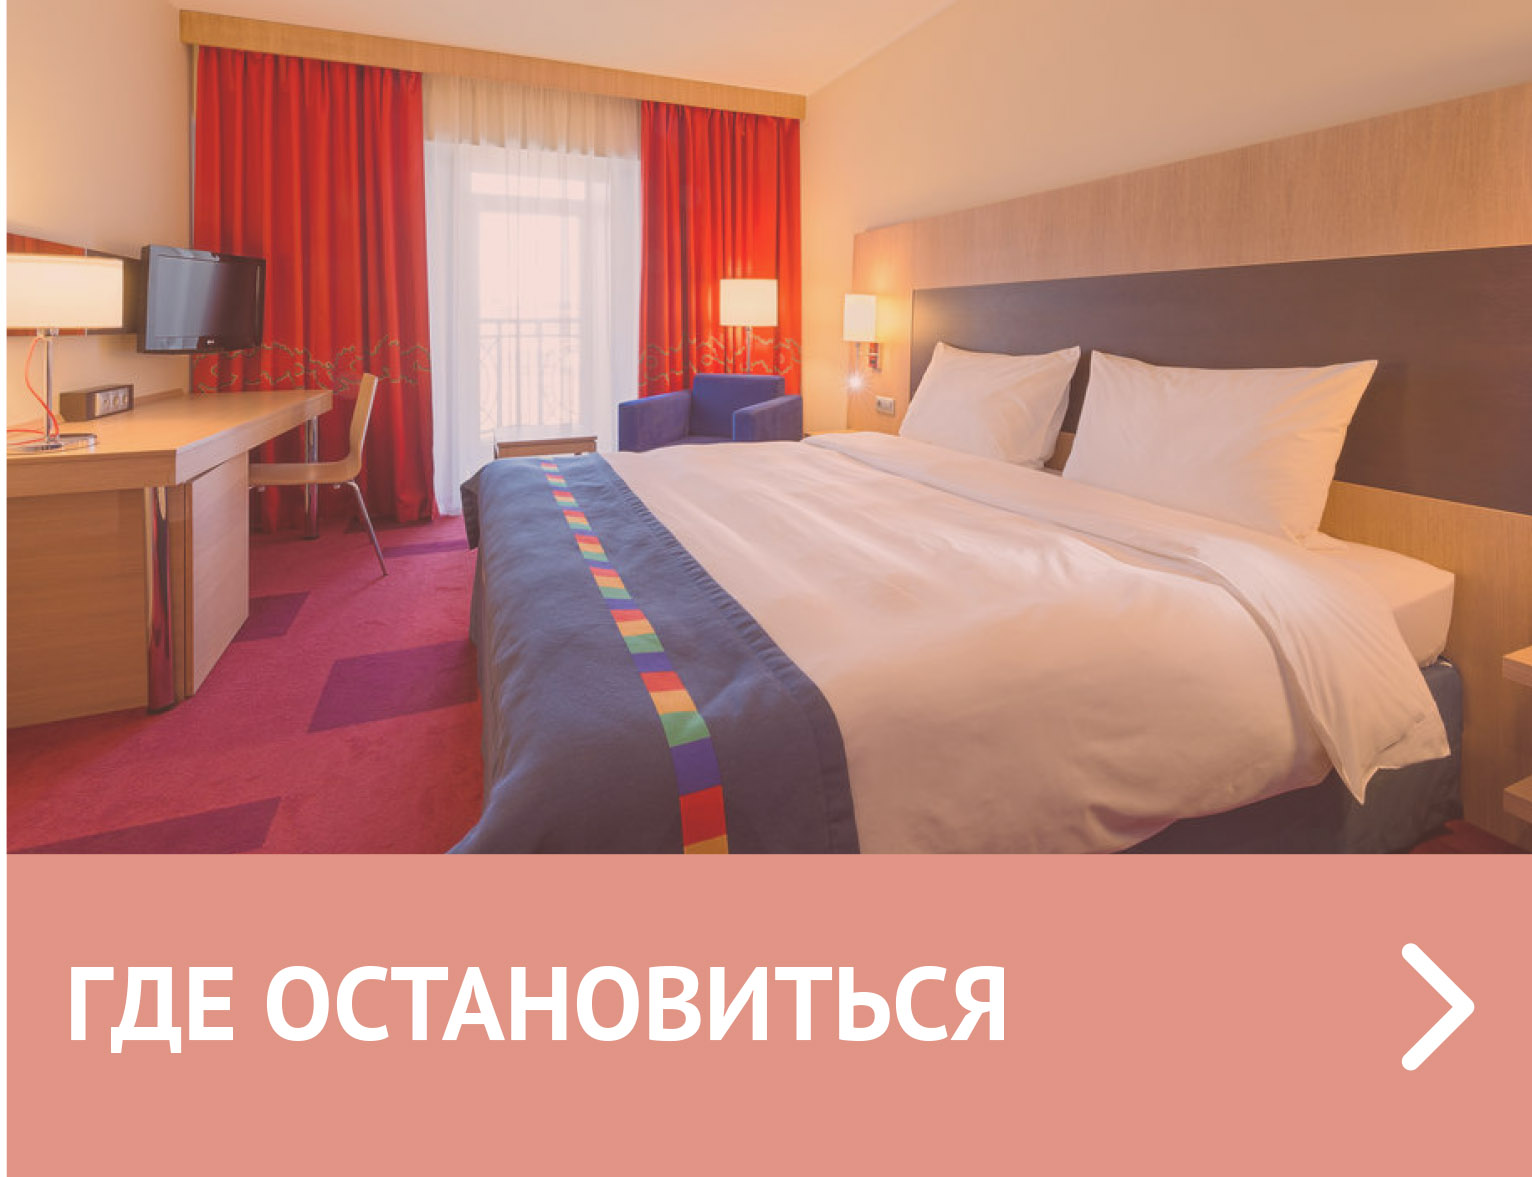 Где остановиться в Санкт-Петербурге: отели, гостиницы, хостелы